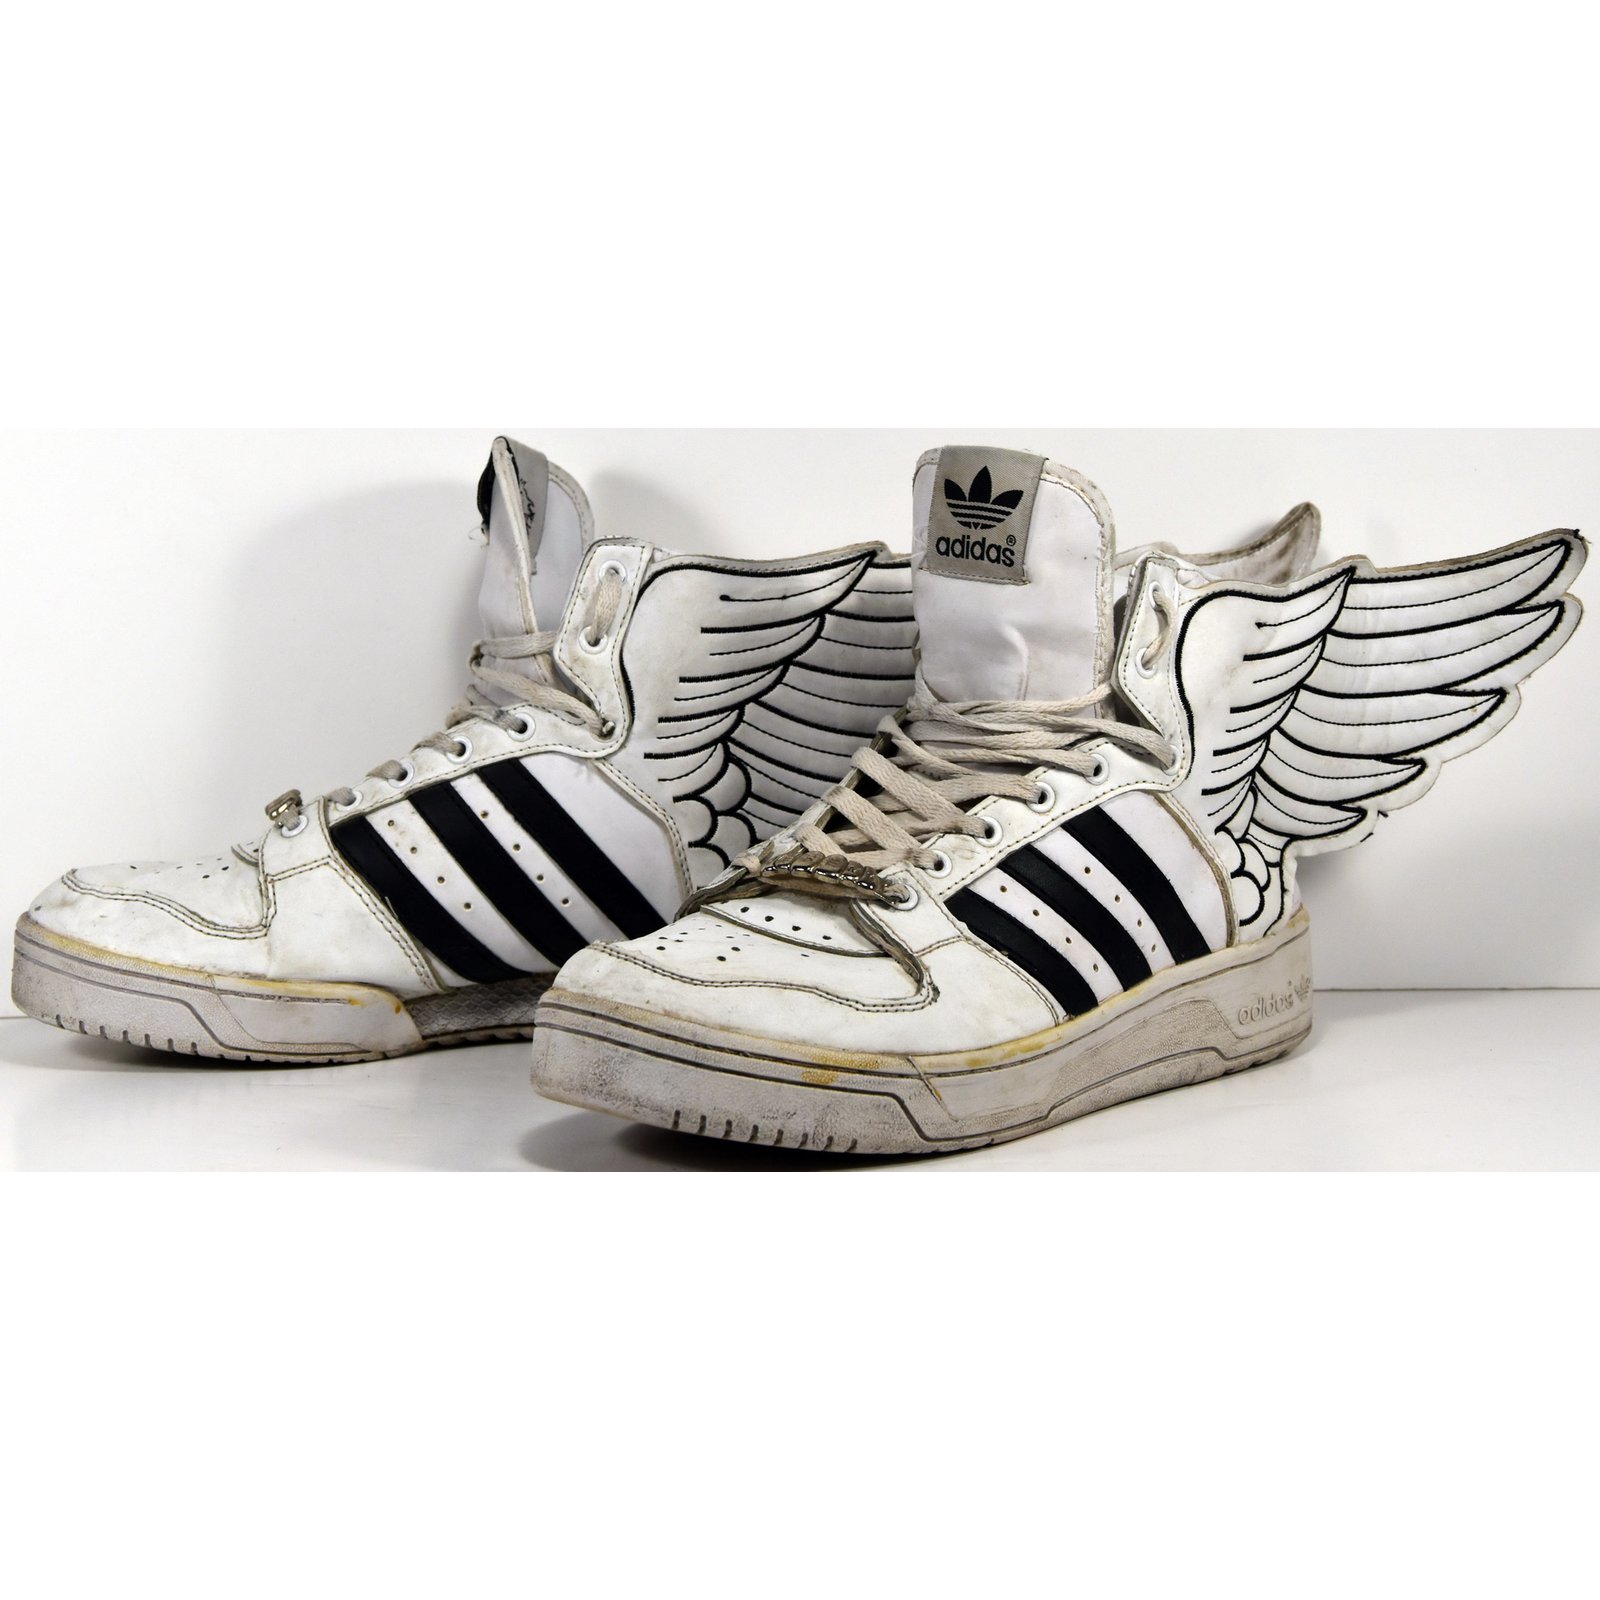 adidas jeremy scott wings 3.0 blanche femme